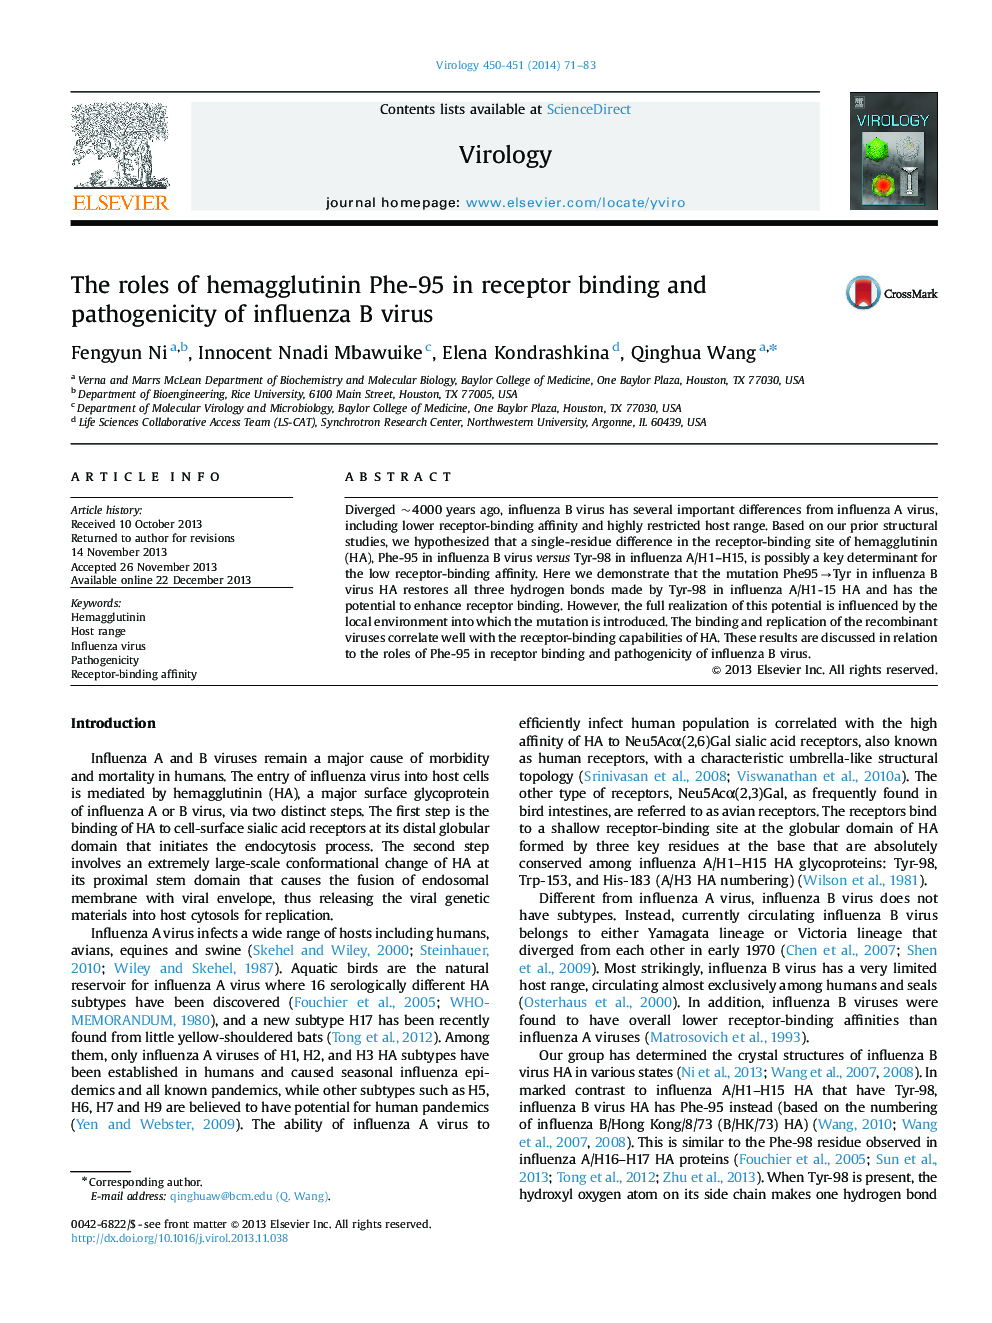 The roles of hemagglutinin Phe-95 in receptor binding and pathogenicity of influenza B virus